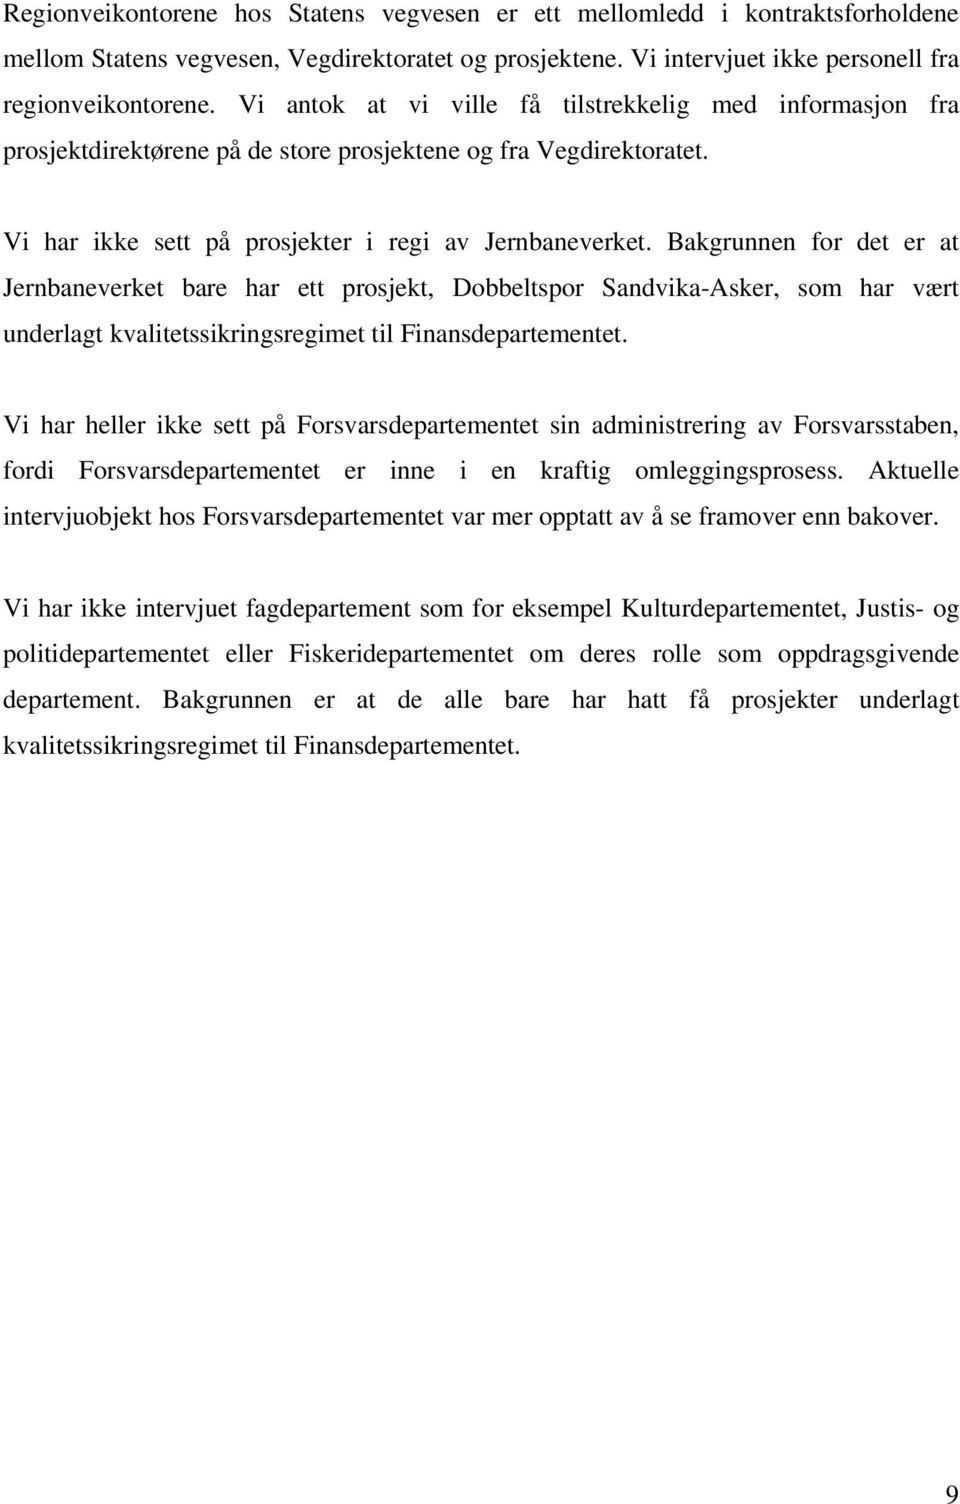 Bakgrunnen for det er at Jernbaneverket bare har ett prosjekt, Dobbeltspor Sandvika-Asker, som har vært underlagt kvalitetssikringsregimet til Finansdepartementet.